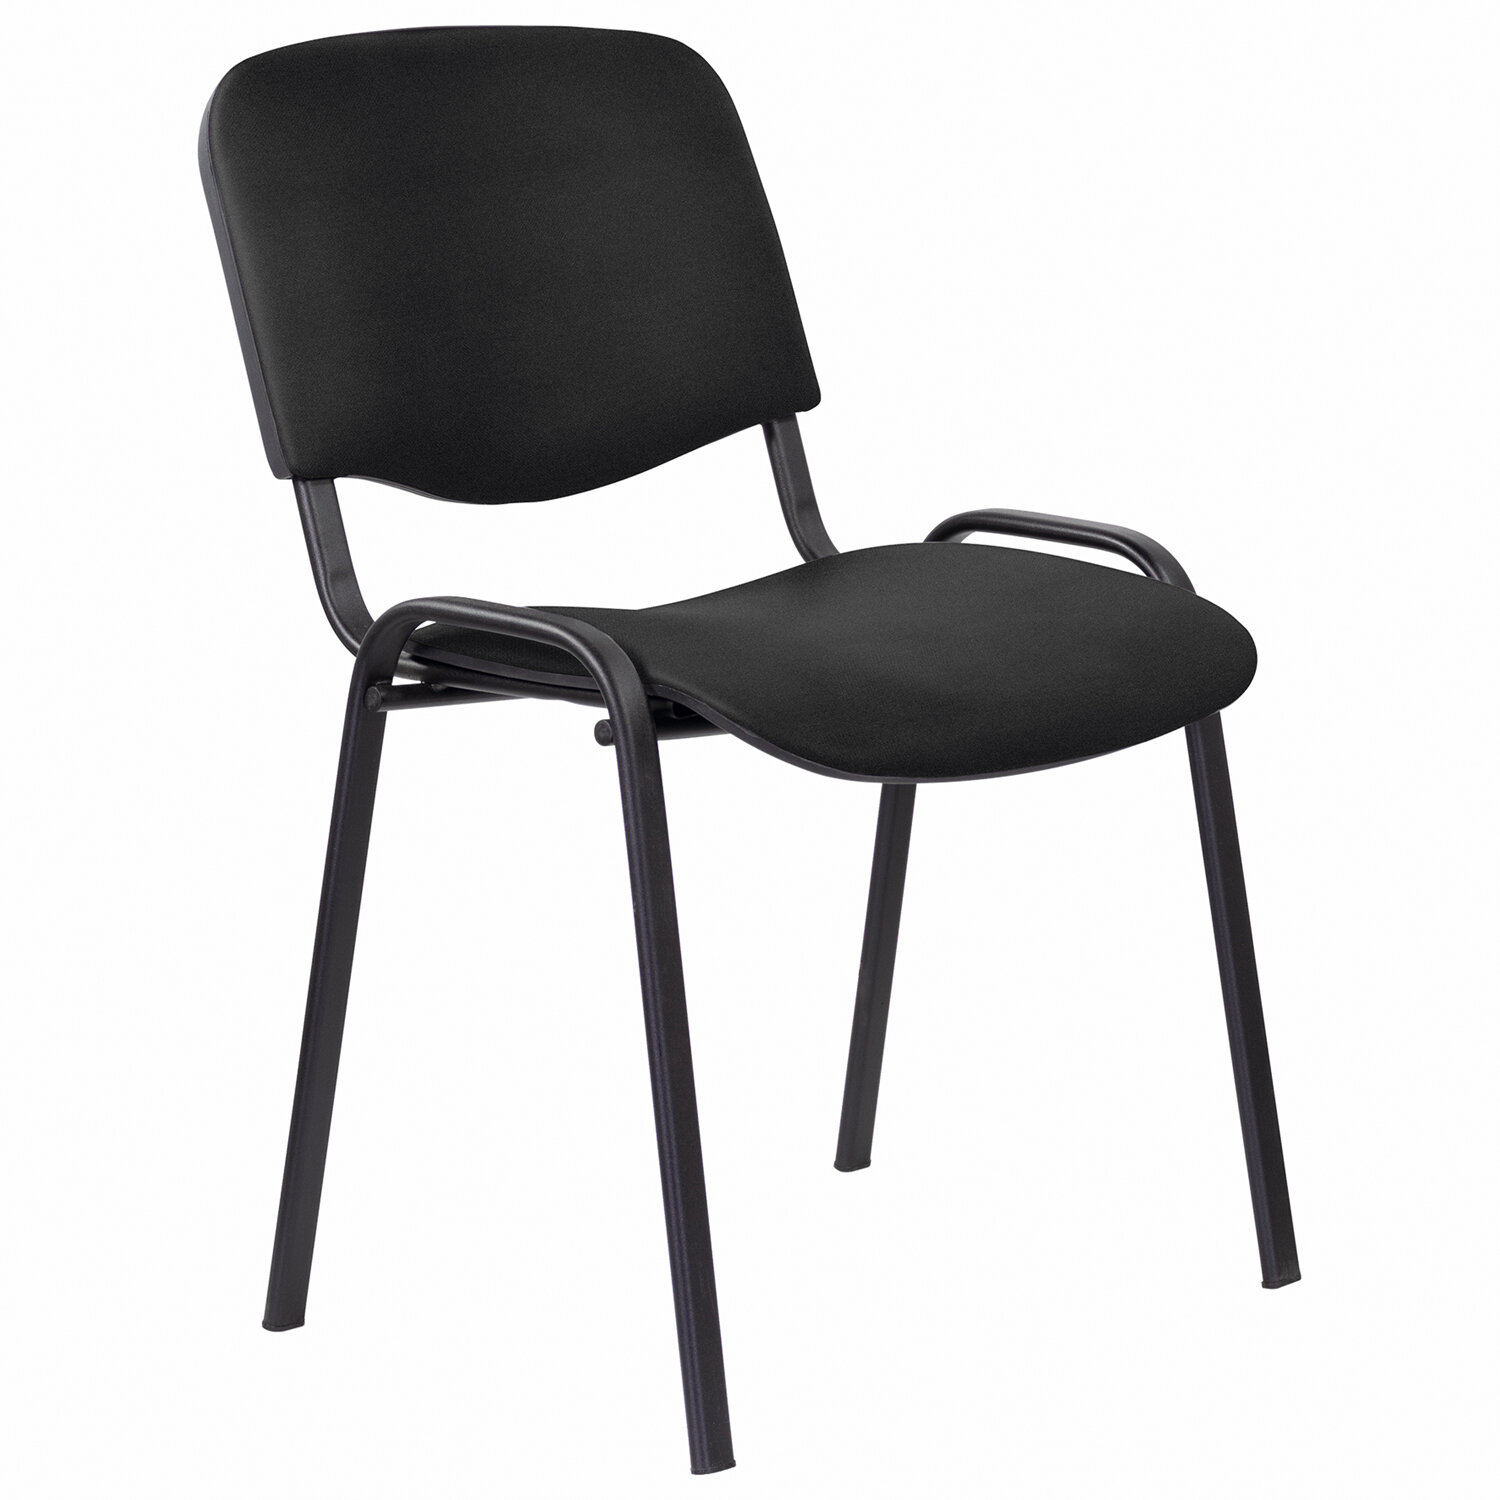 Стул офисный easy chair изо черный искусственная кожа металл черный